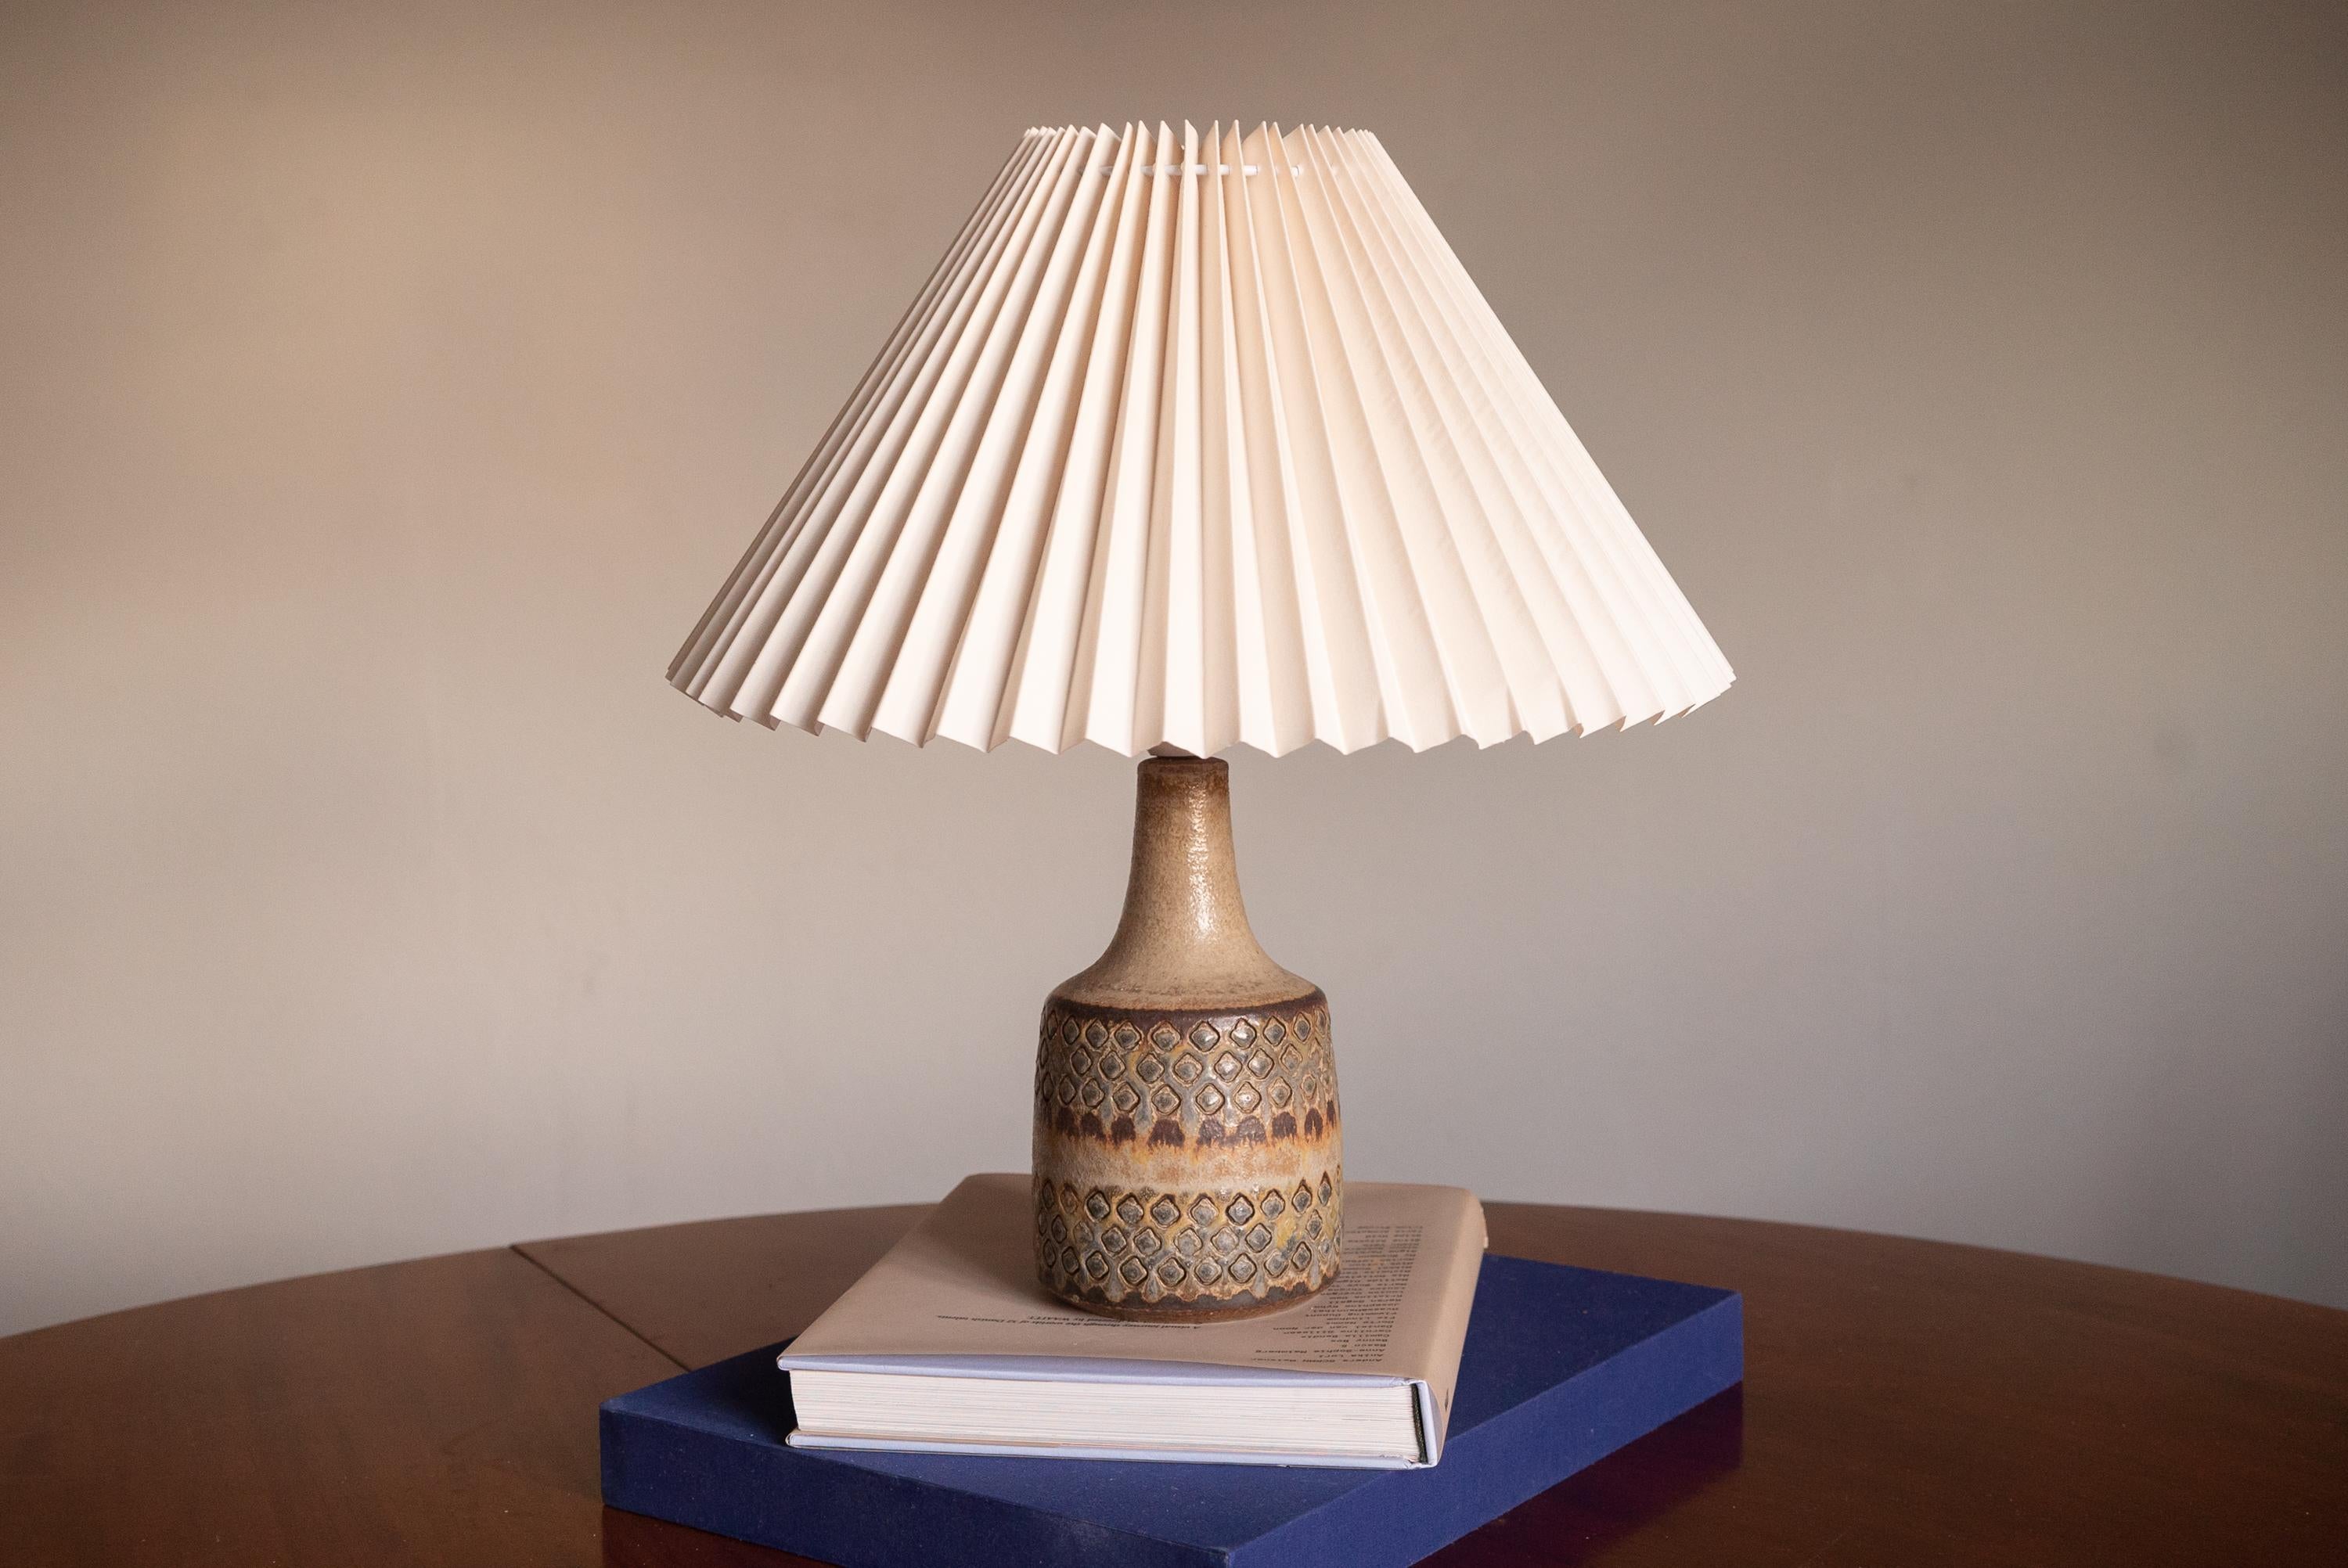 Eine Tischleuchte, hergestellt von Søholm Keramik auf der Insel Bornholm in Dänemark. Mit kunstvoll glasiertem und geritztem Dekor.

Verkauft ohne Lampenschirm. Die angegebenen Maße verstehen sich ohne den Lampenschirm. Höhe einschließlich Sockel.